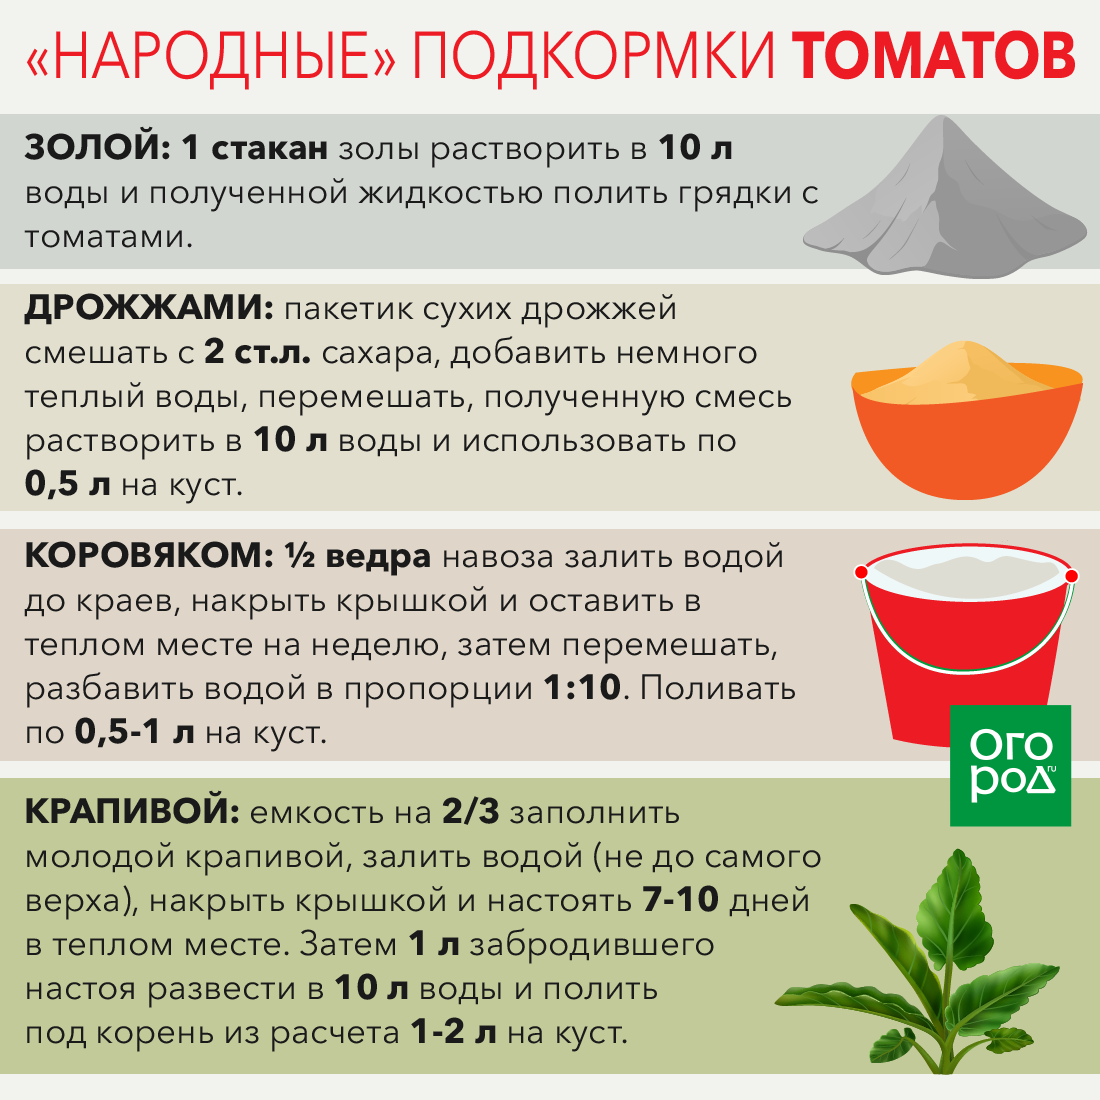 Как правильно подкормить томаты дрожжами в теплице, в открытом грунте видео